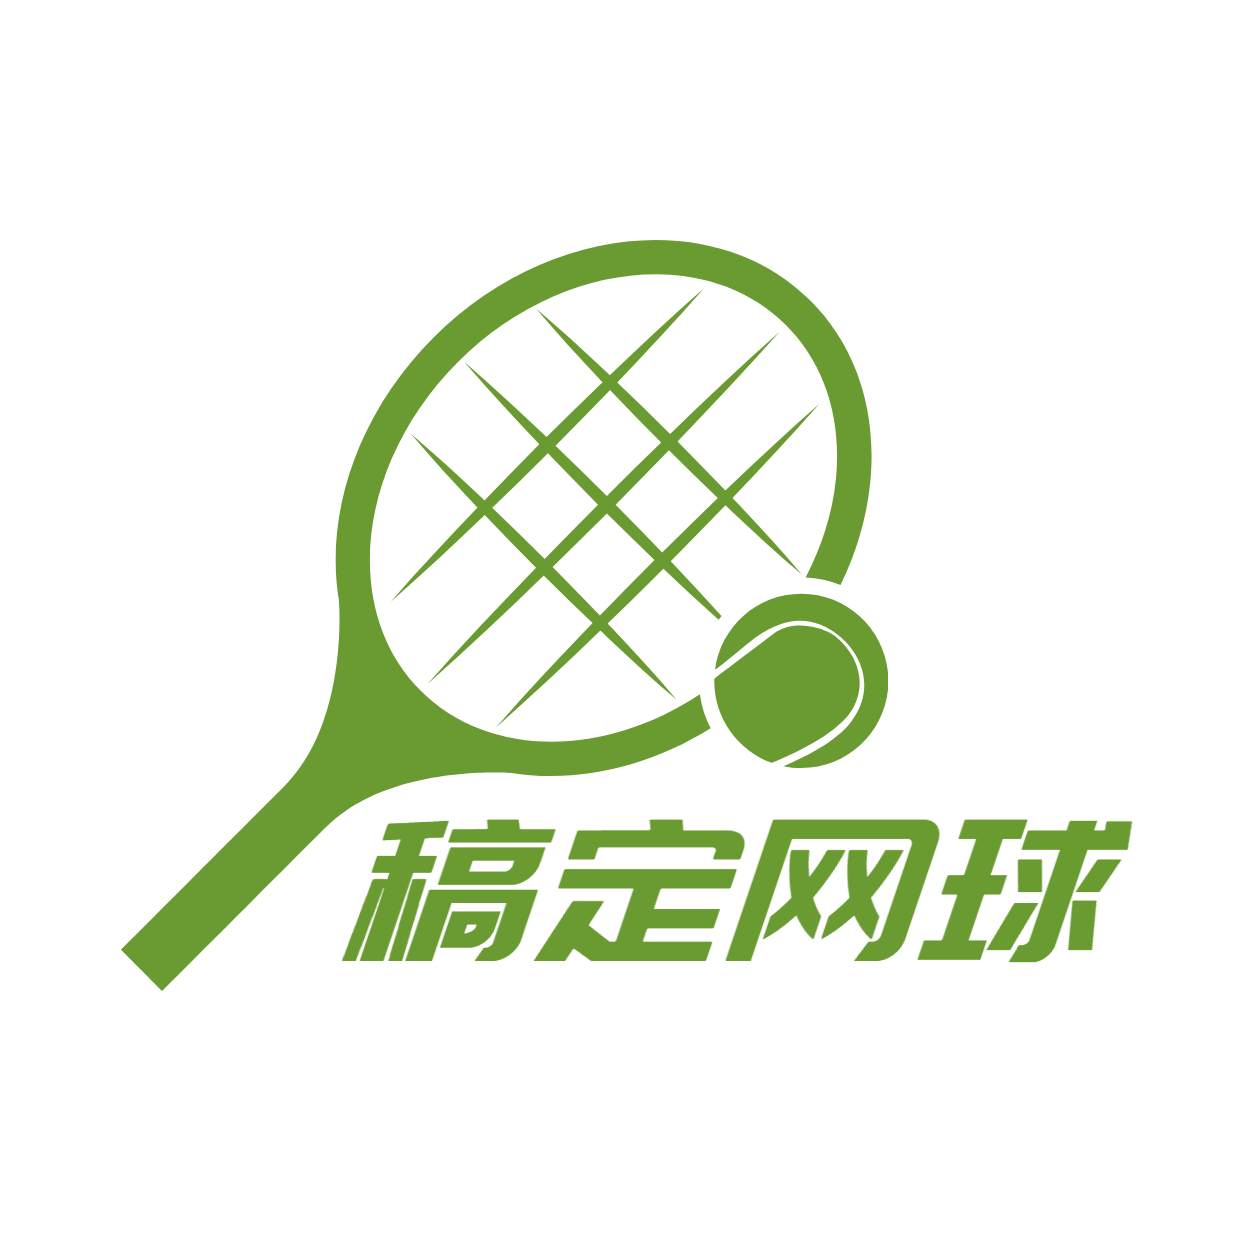 教育培训机构网球店标logo